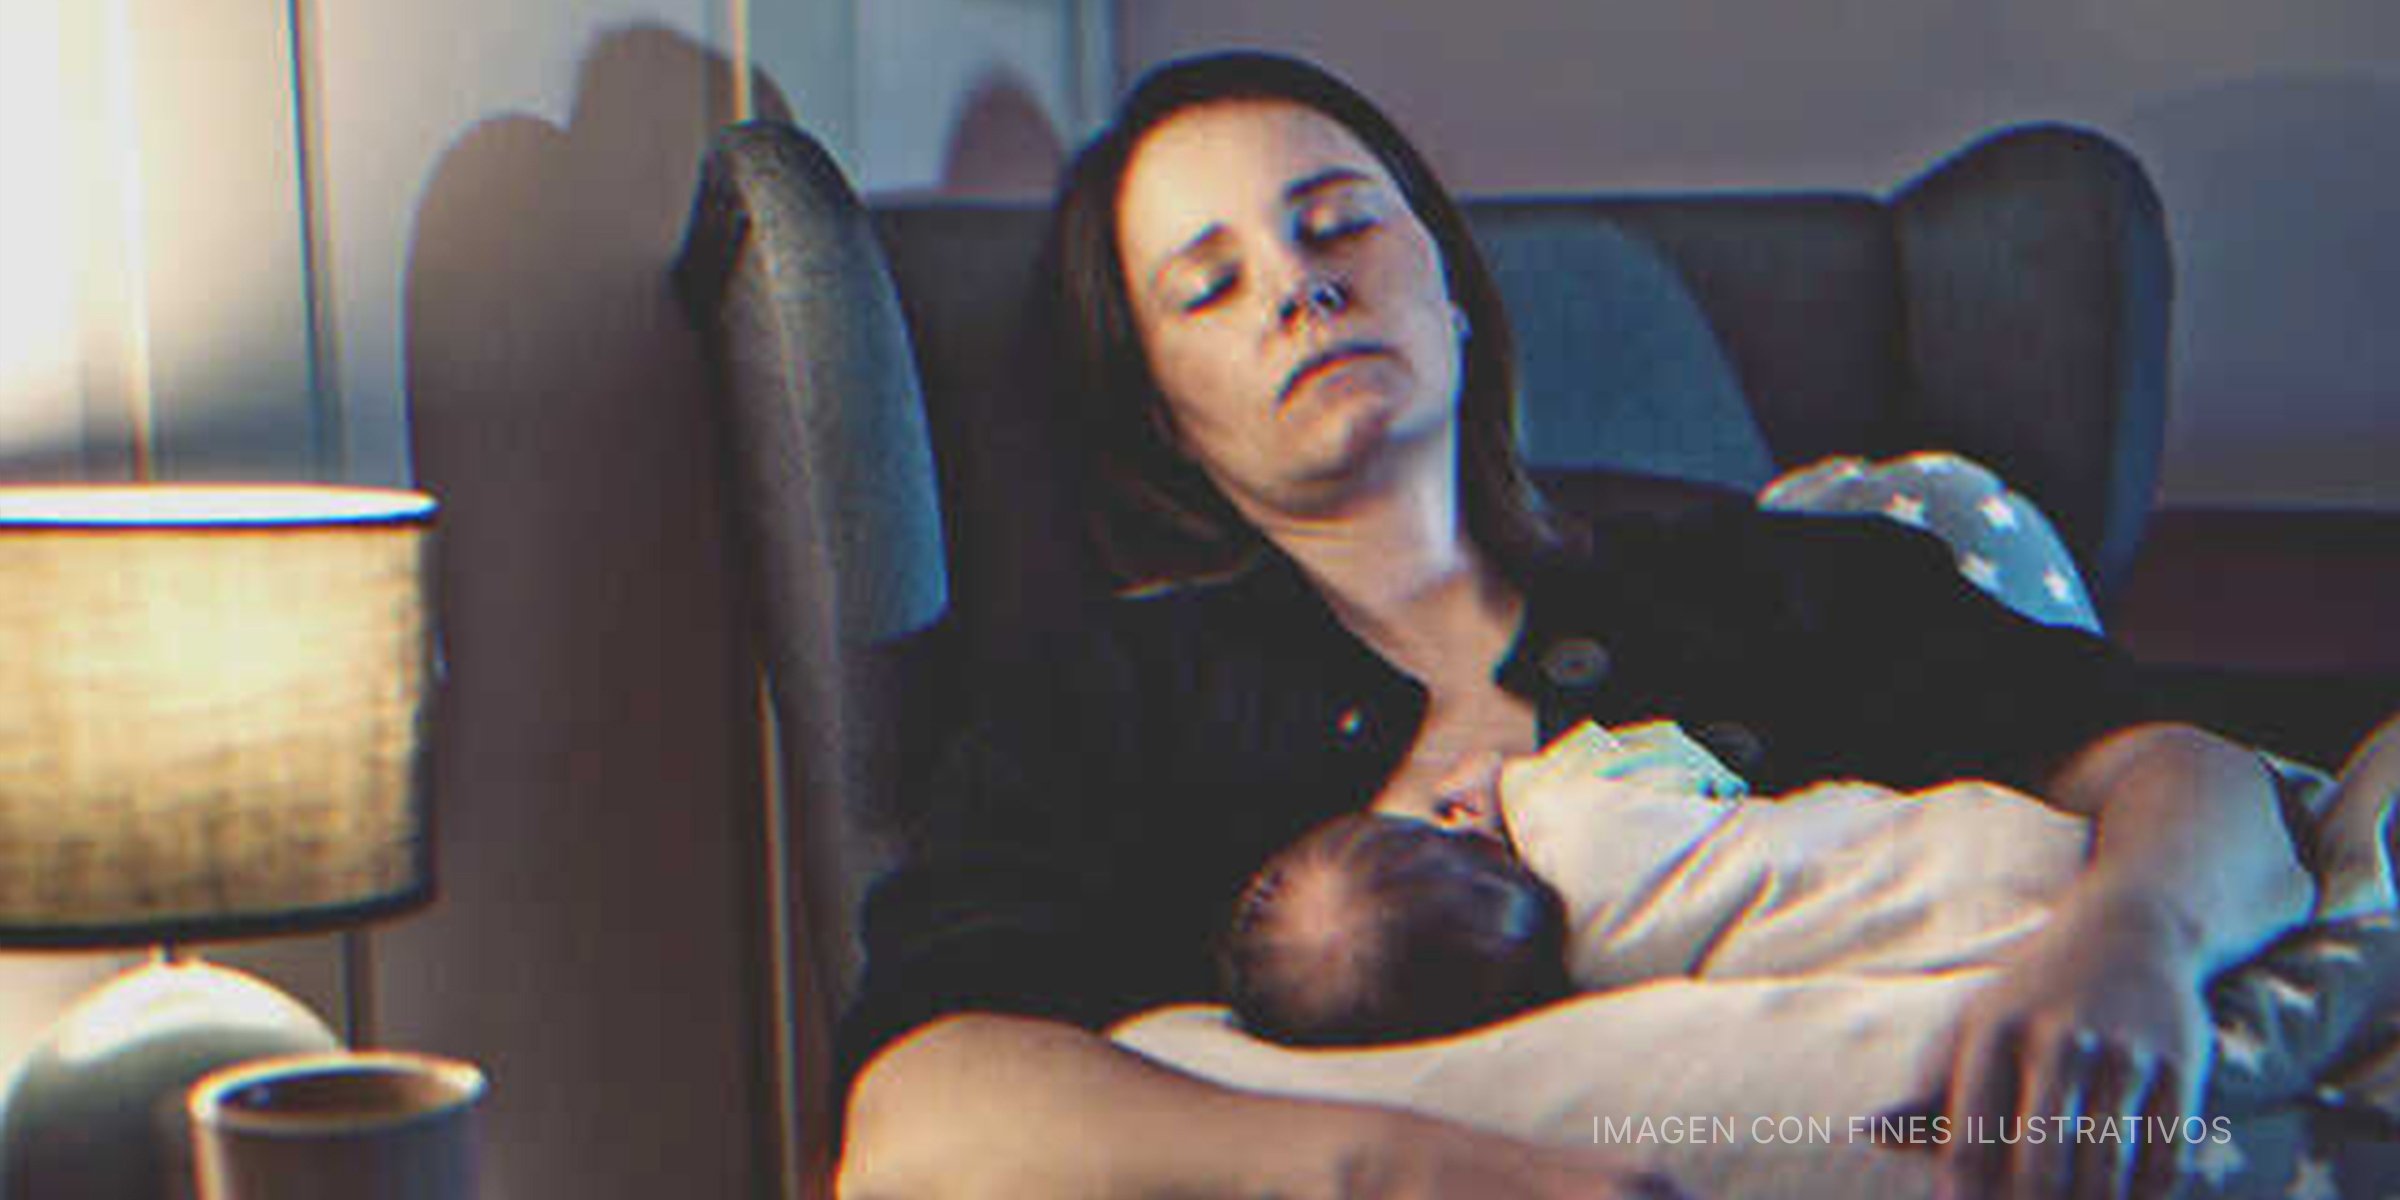 Madre cansada durmiendo y alimentando a su bebé | Fuente: Getty Images